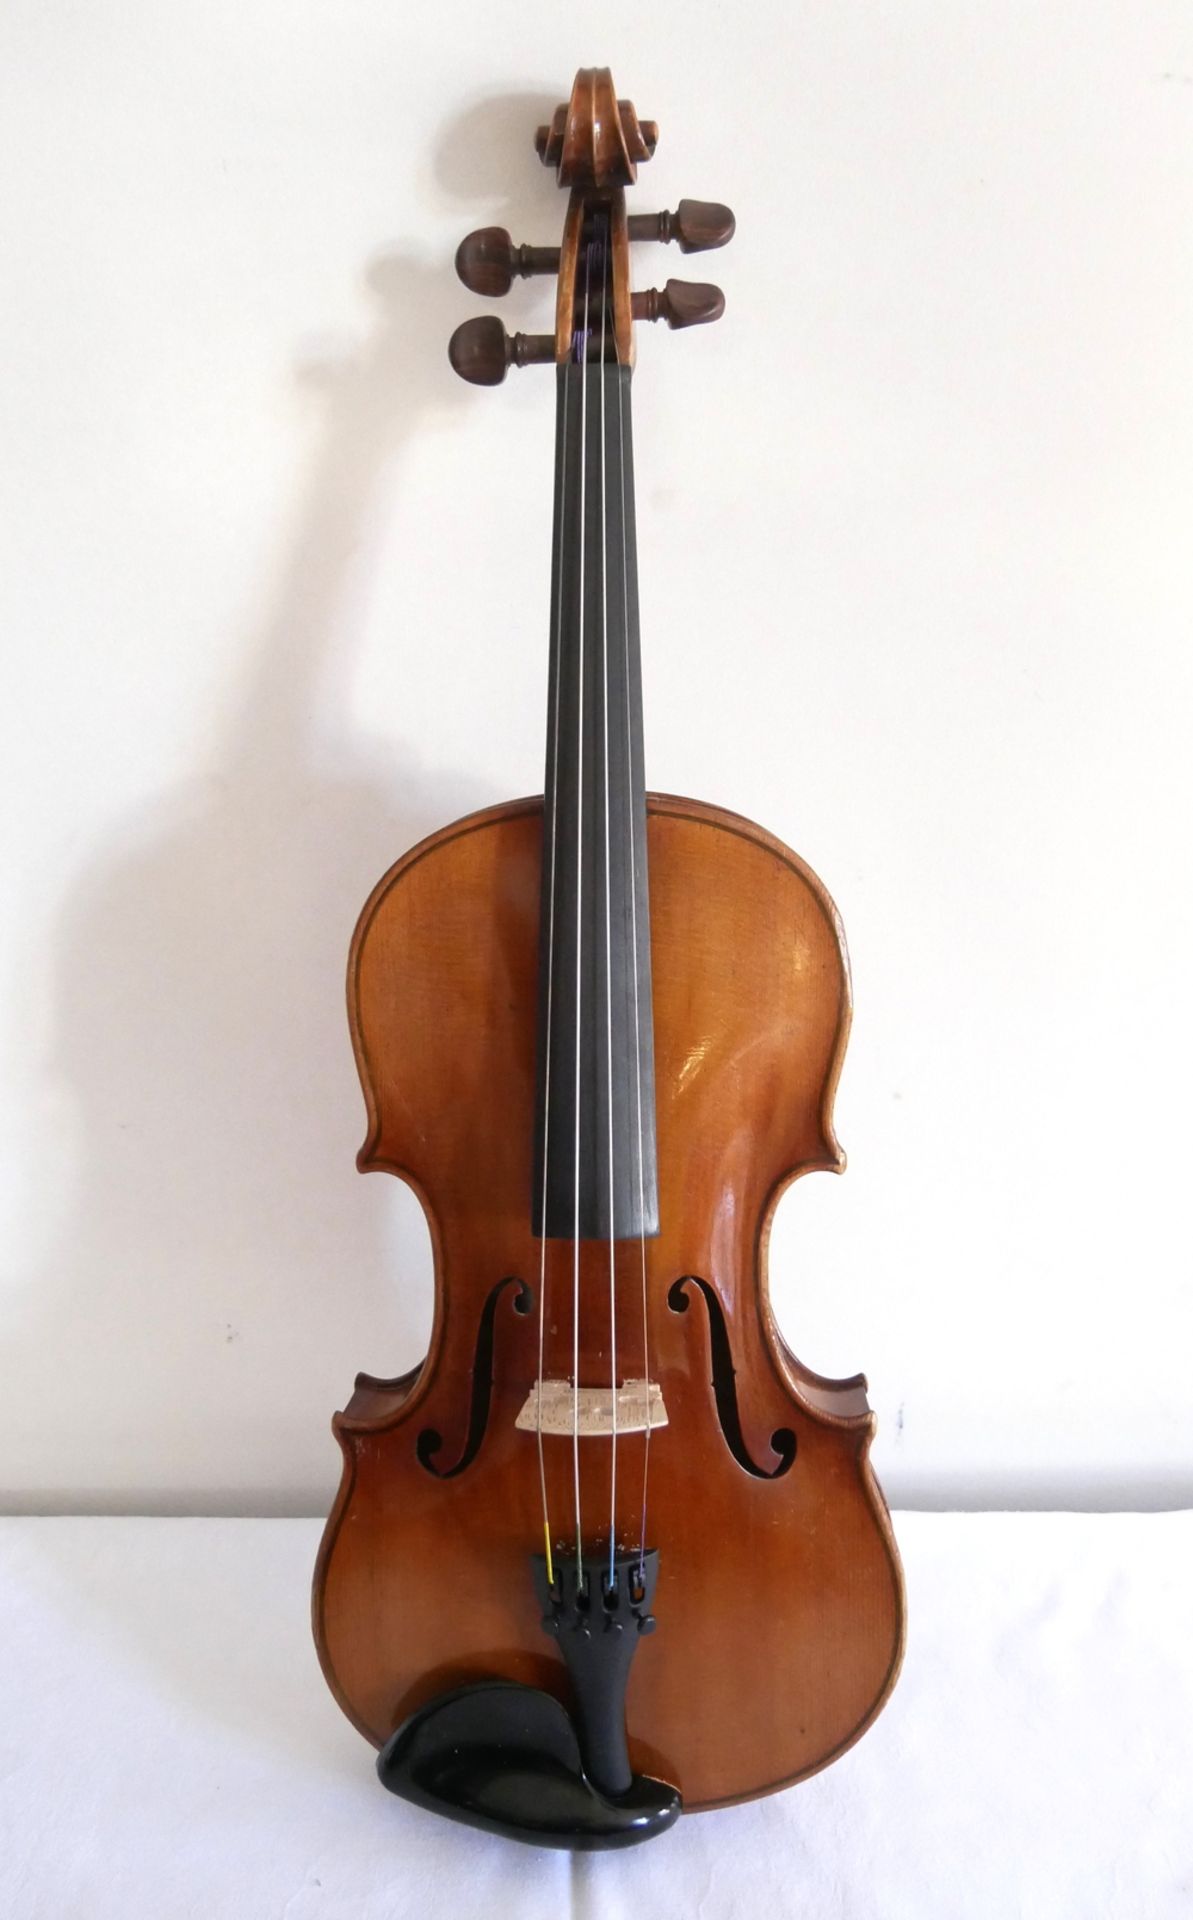 4/4 Violine mit 2 Violinenbögen im Kasten. Gesamtlänge ca. 59 cm, Korpusmaße: unten ca. 20,5 cm, - Bild 2 aus 6